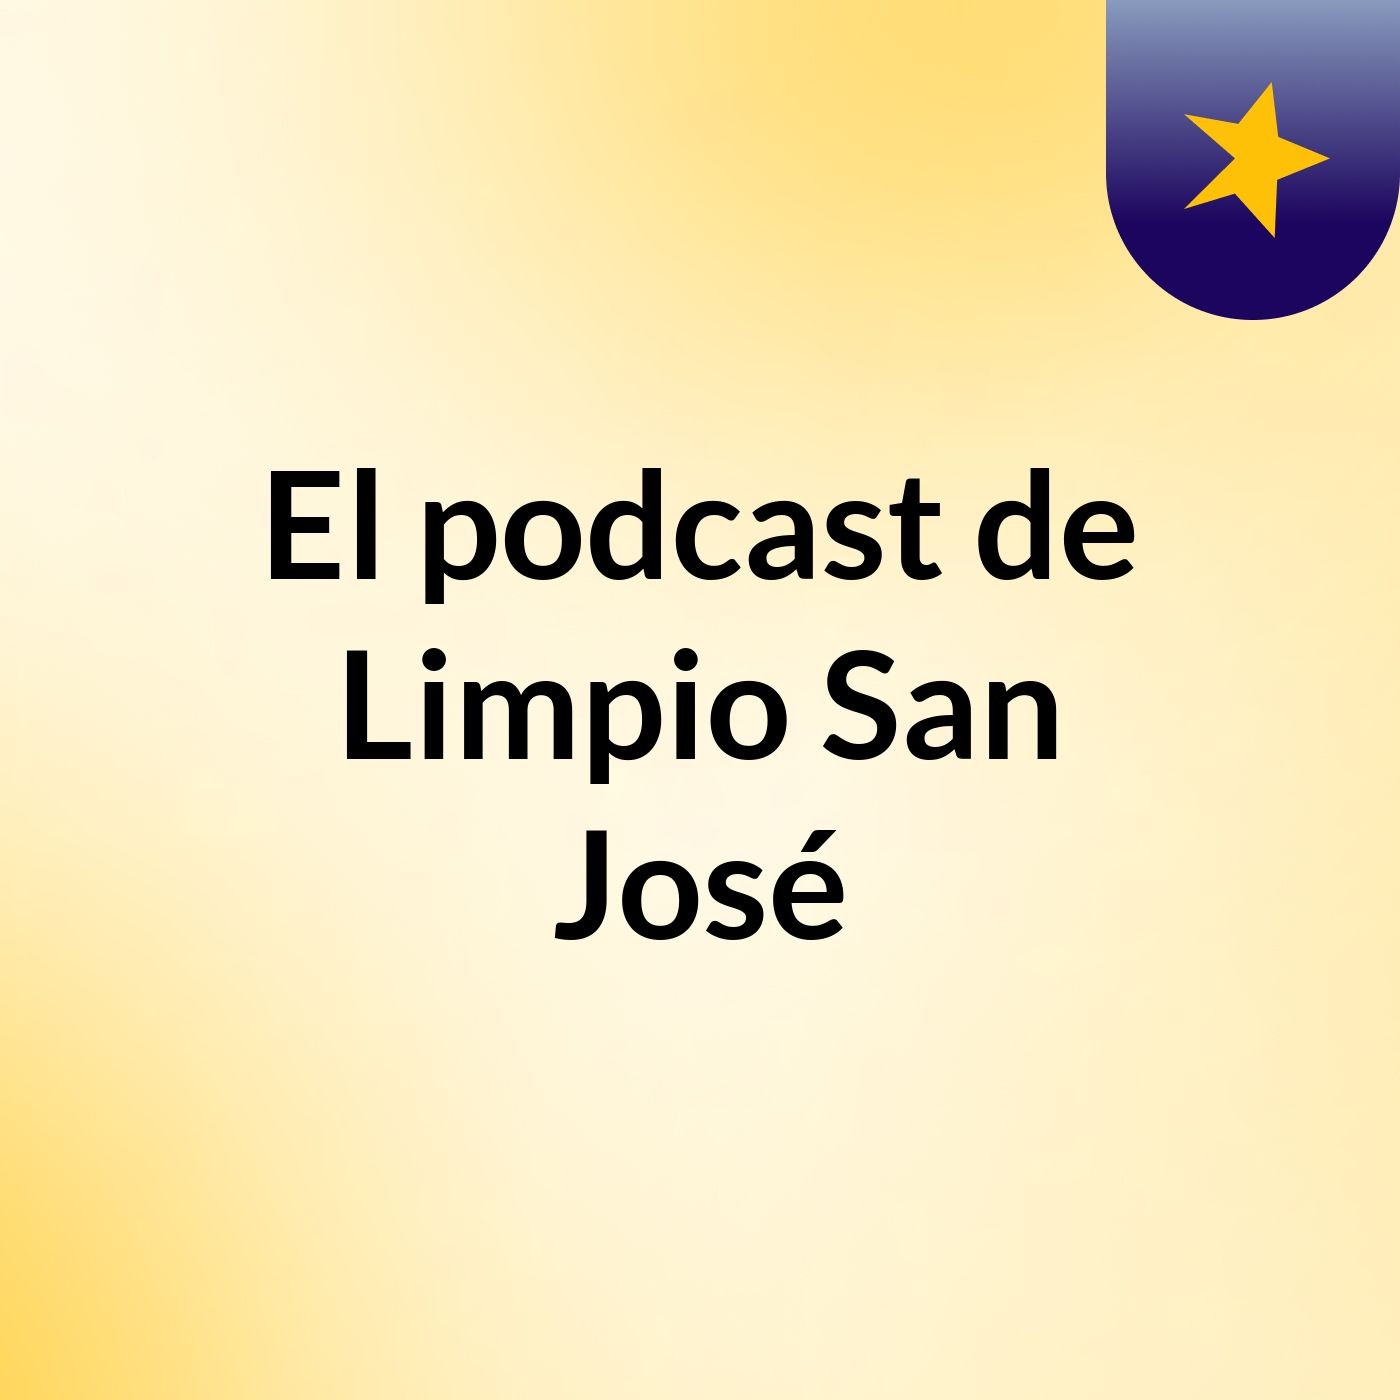 El podcast de Limpio San José